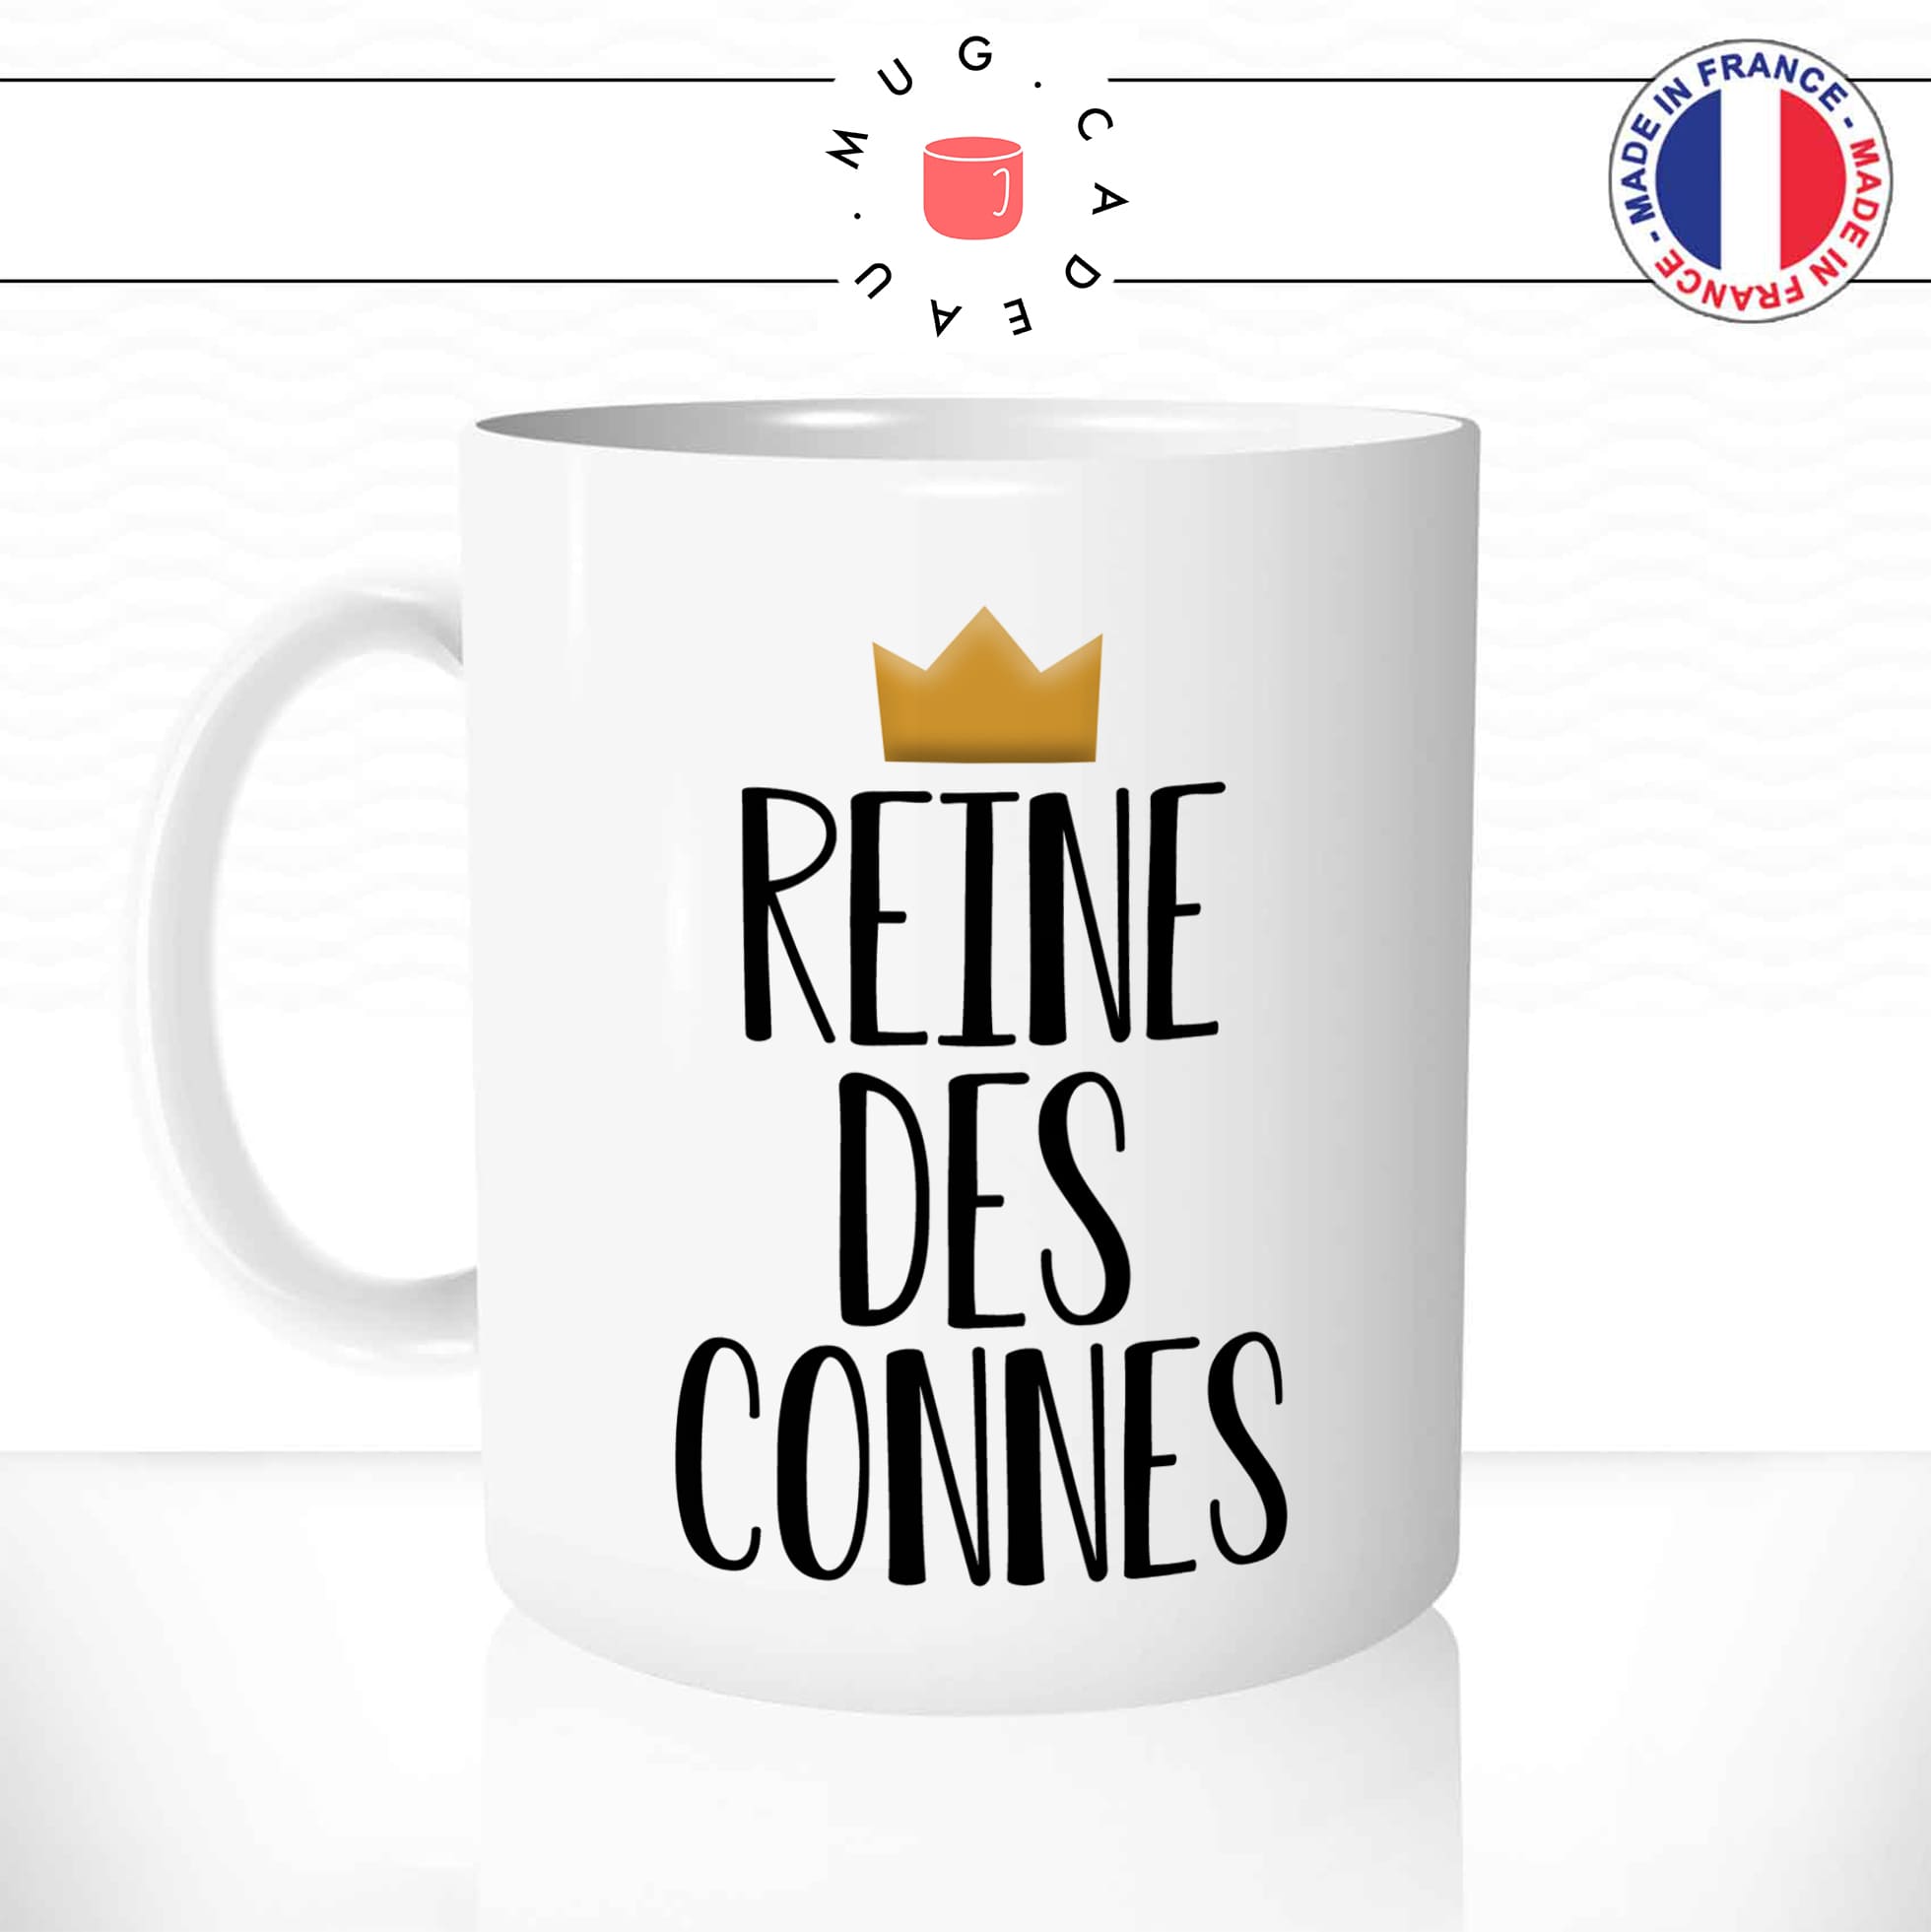 mug-tasse-reine-des-connes-femme-connasse-couronne-fun-humour-original-mugs-tasses-café-thé-idée-cadeau-personnalisée